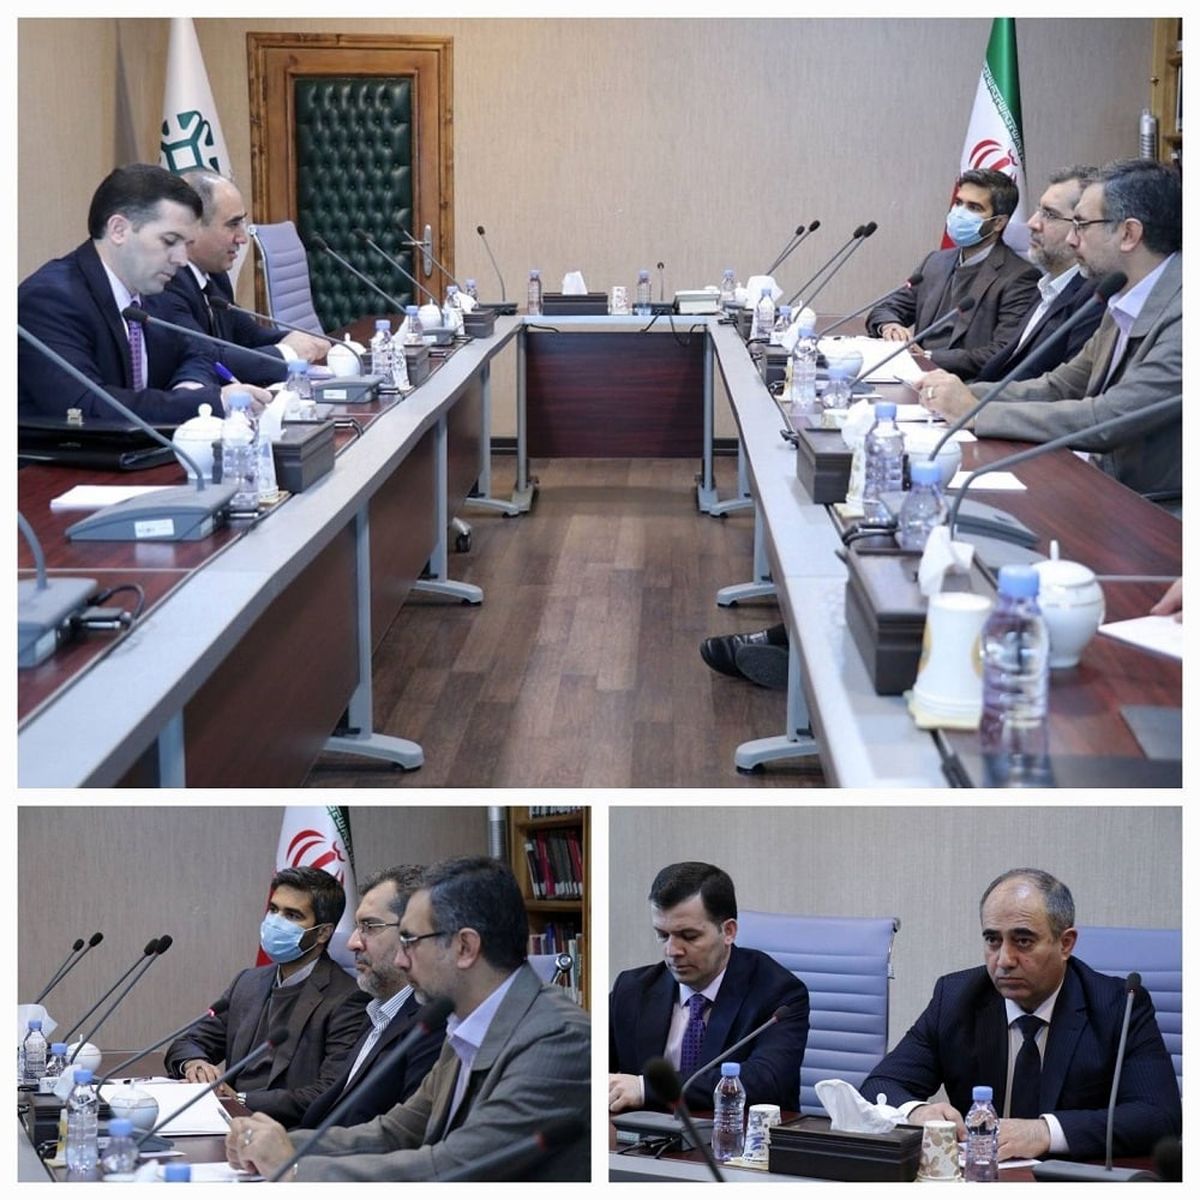 ضرورت گسترش همکاری‌های علمی و راهبردی میان مراکز استراتژیک ایران و تاجیکستان

